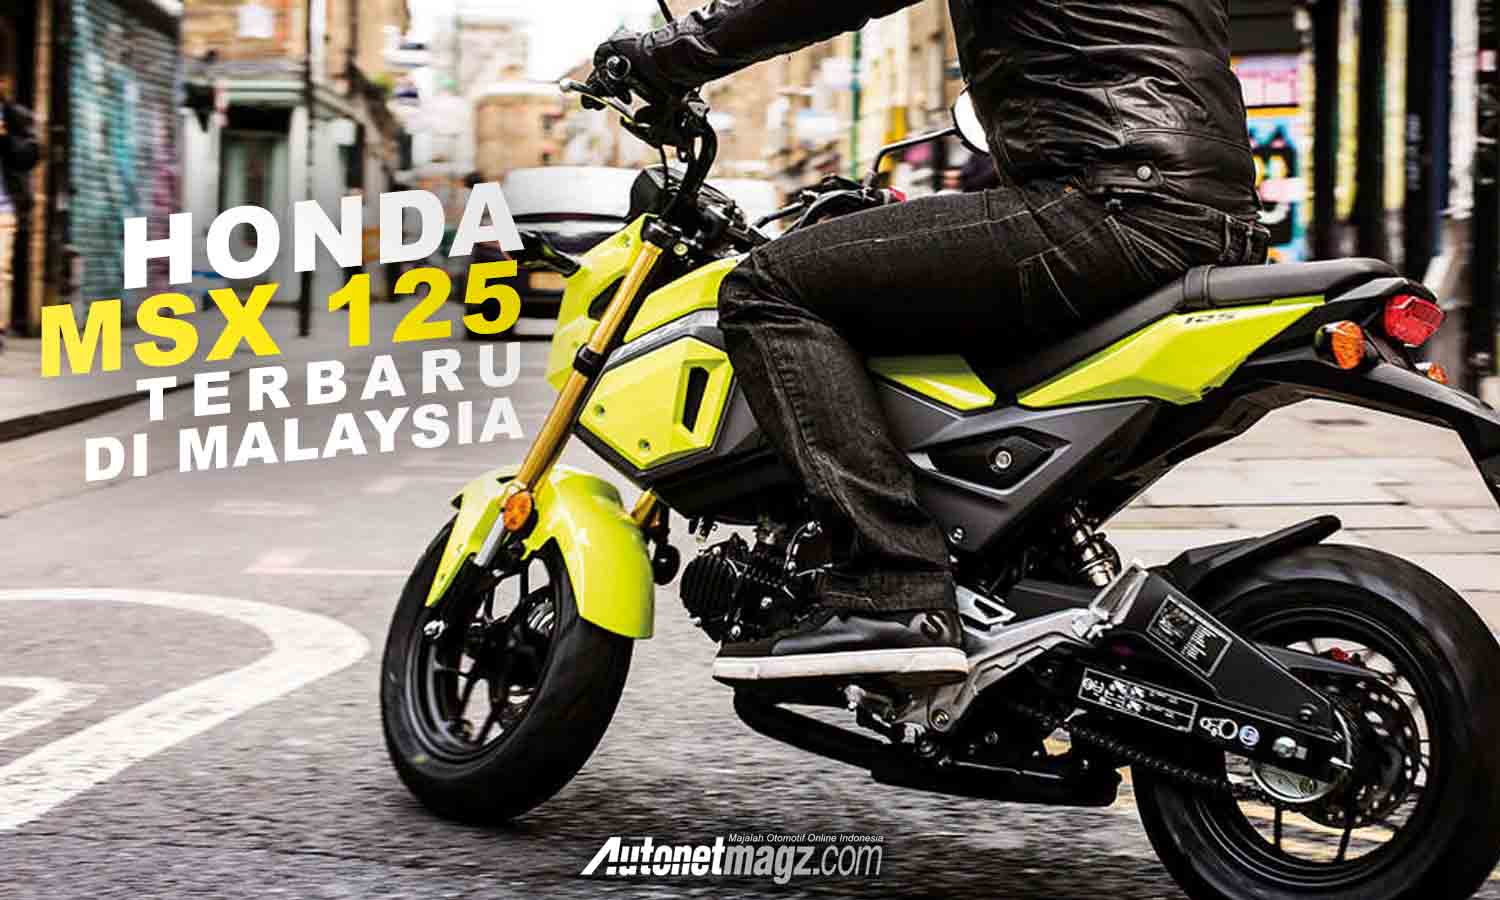 Berita, cover msx: Honda MSX 125 Terbaru Dirilis di Malaysia